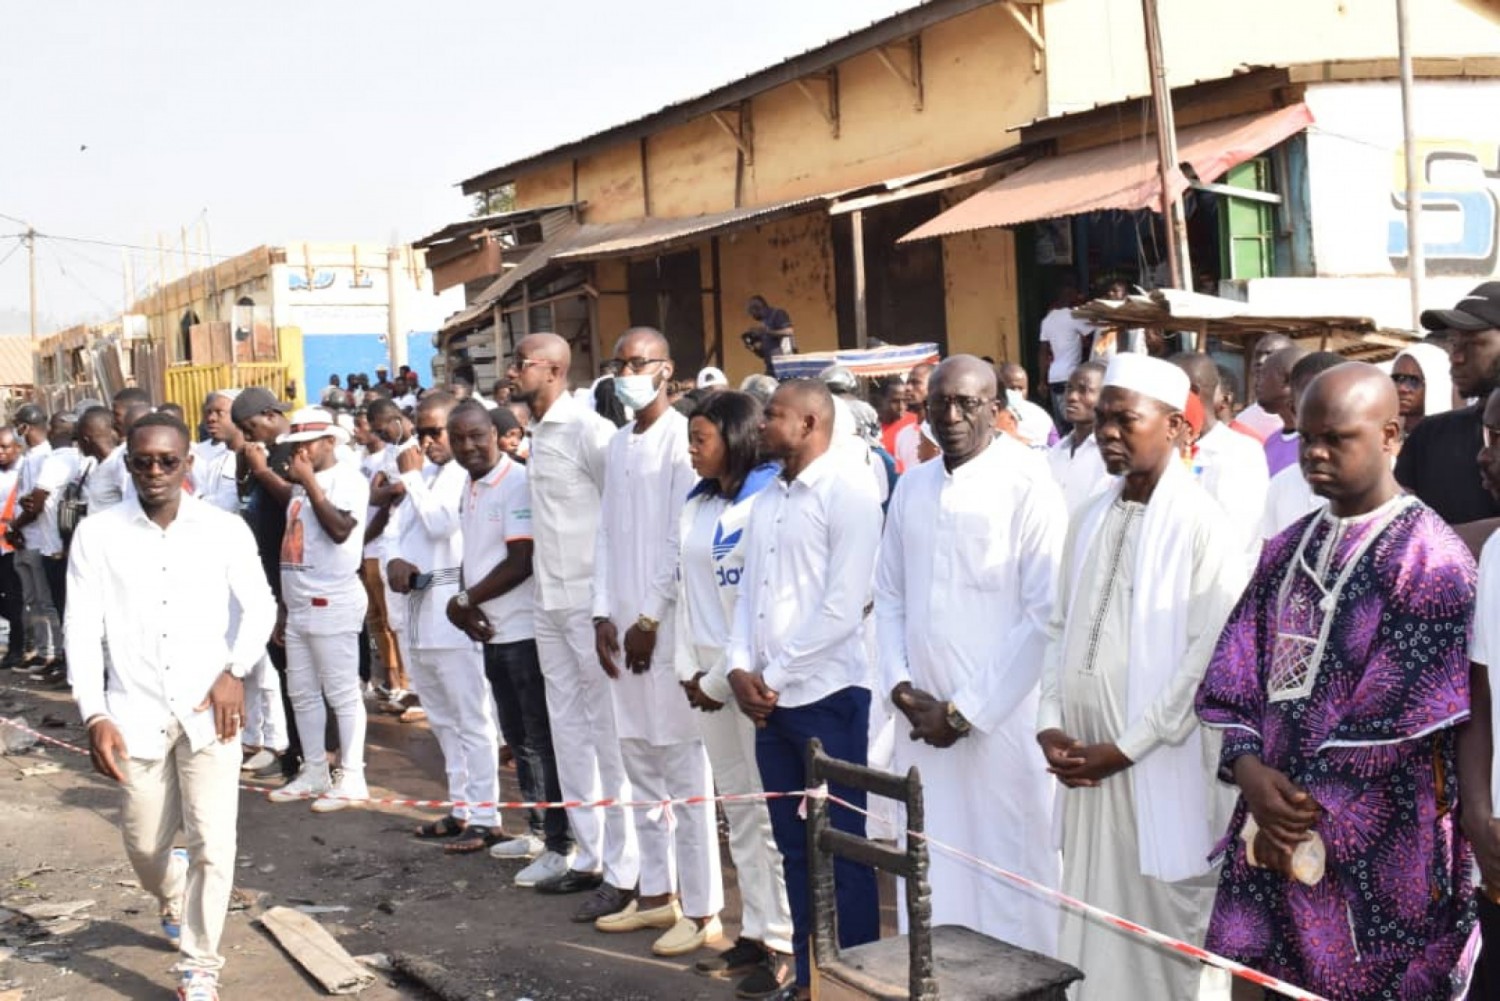 Côte d'Ivoire : Man, après l'incendie meurtrier, les jeunes organisent une « marche blanche » pour exprimer leur solidarité aux familles éplorées